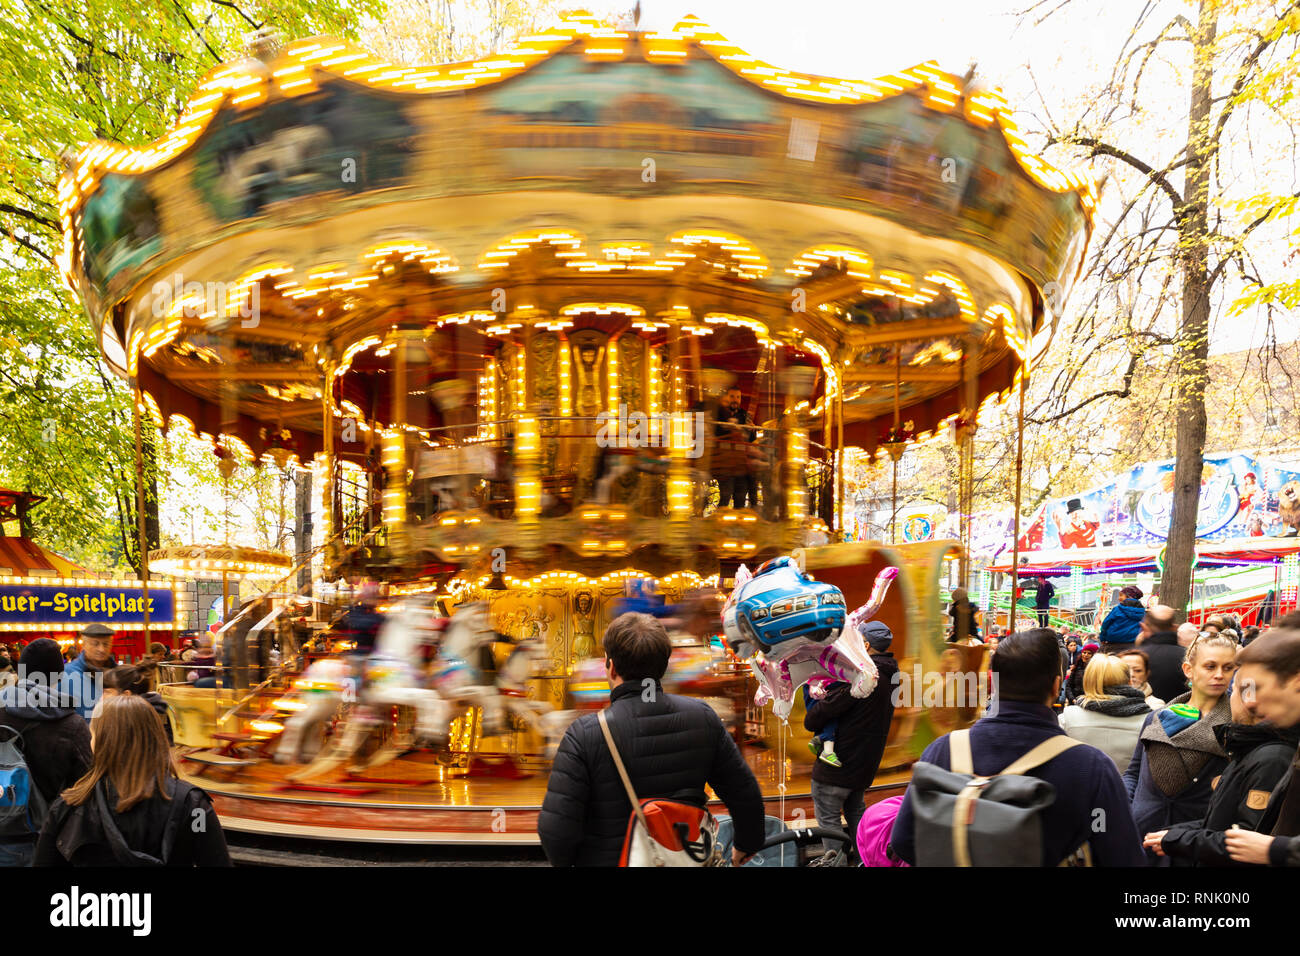 La suisse, Bâle, Petersplatz. Belle grande vintage carousel en mouvement pendant la foire d'automne. Photo prise le 3 novembre 2018 Banque D'Images